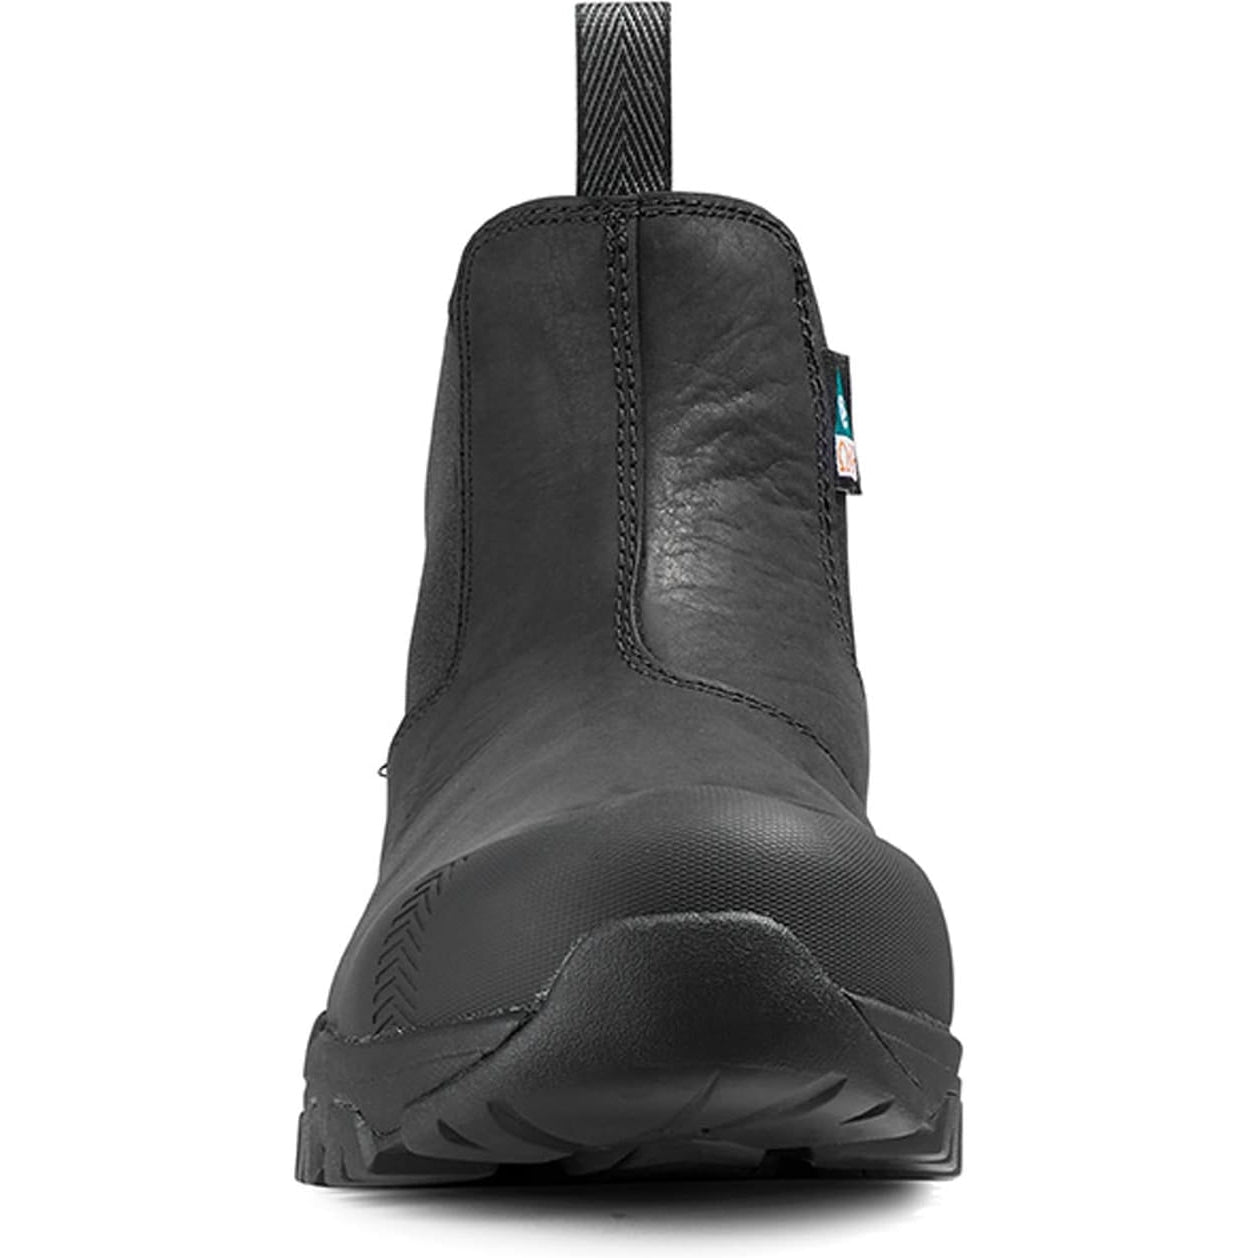 Kodiak Men's Quest Bound Comp Toe WP Chelsea Work Boot -Black- 4THNBK  - Overlook Boots